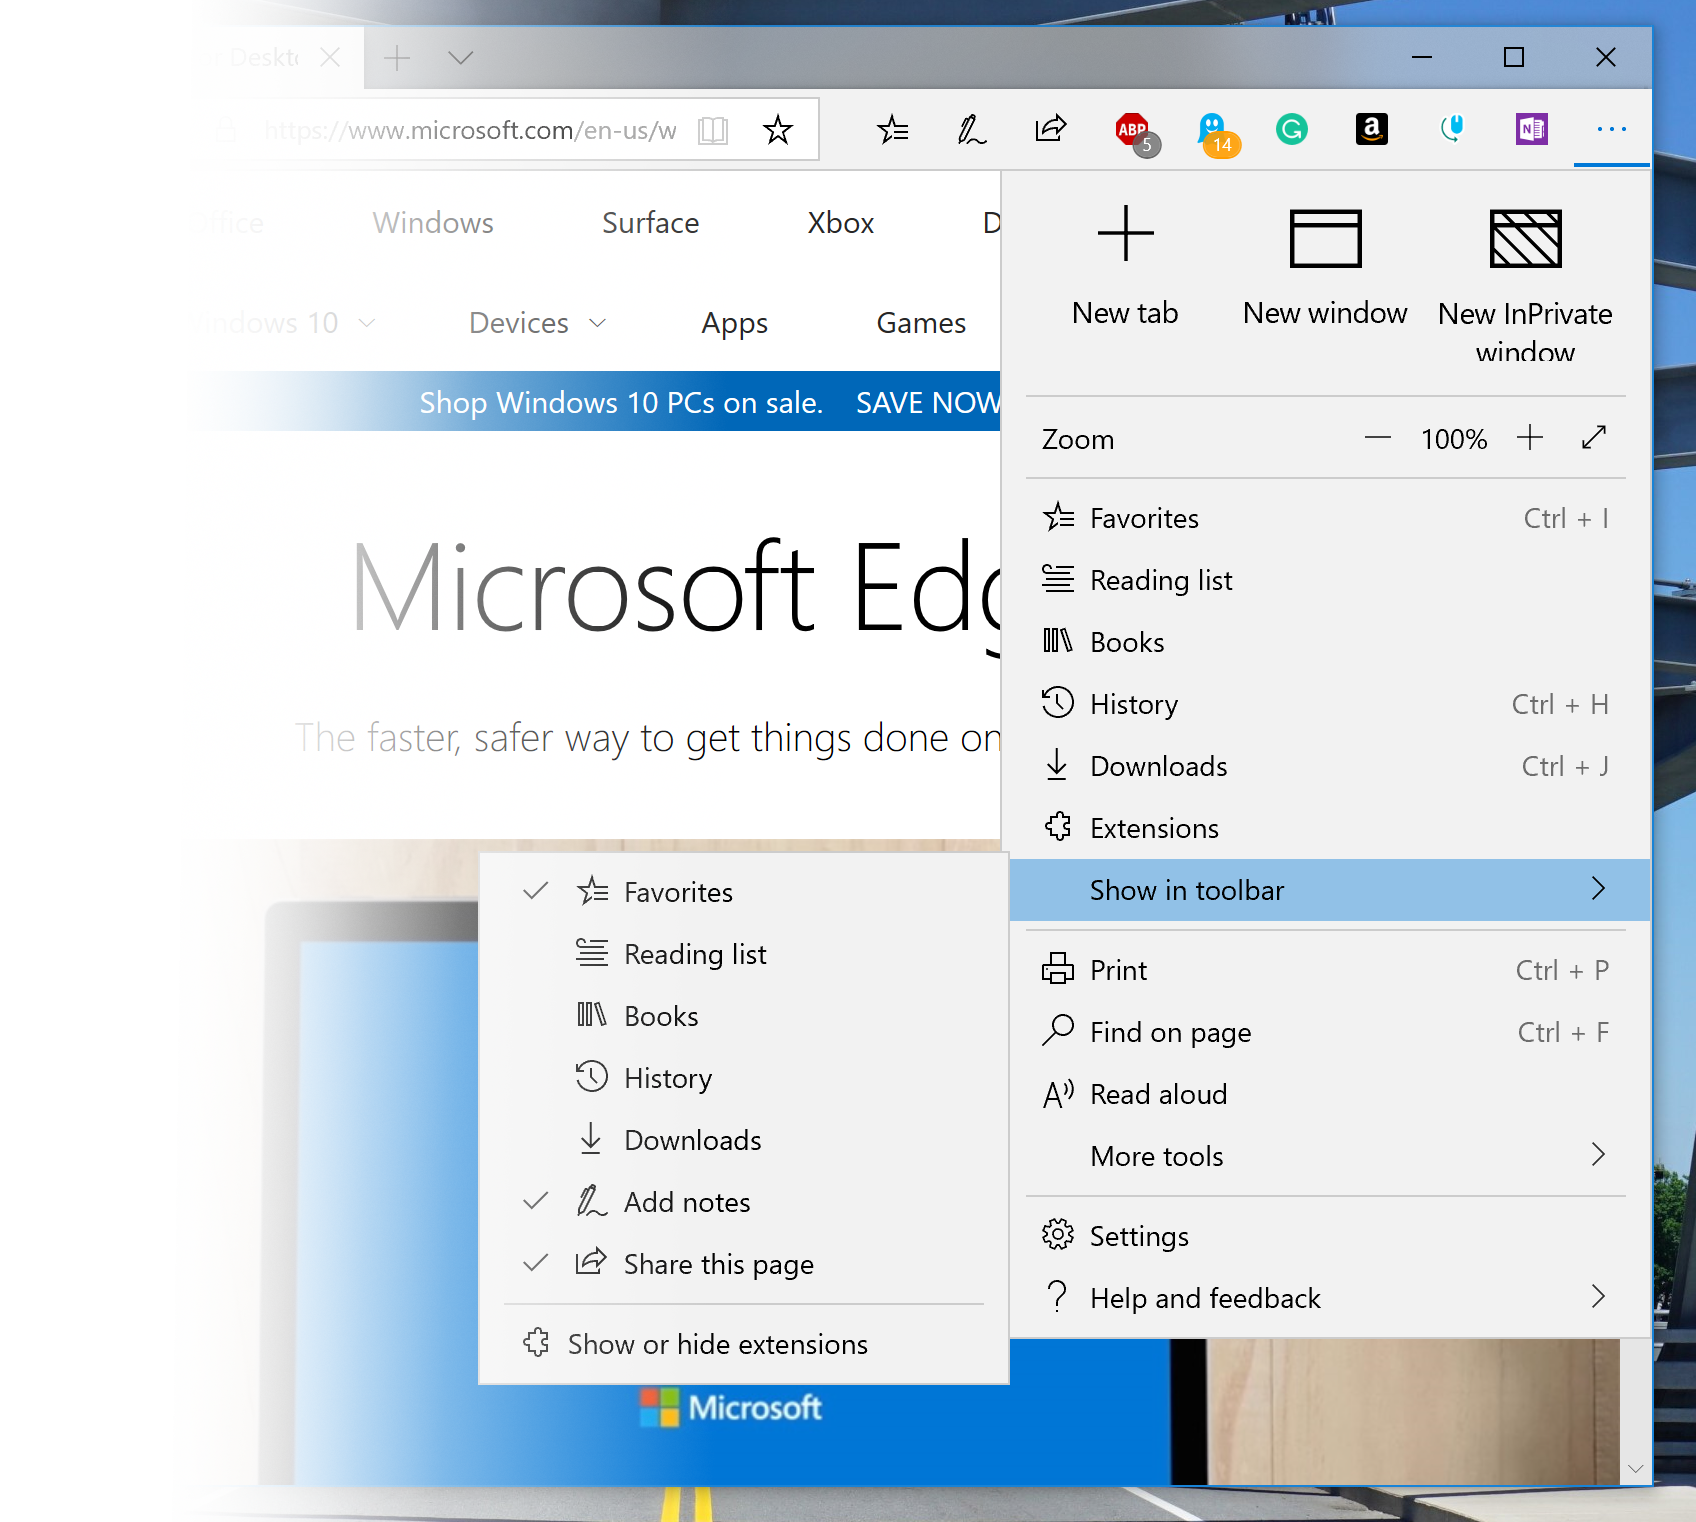 Edge browser settings menu